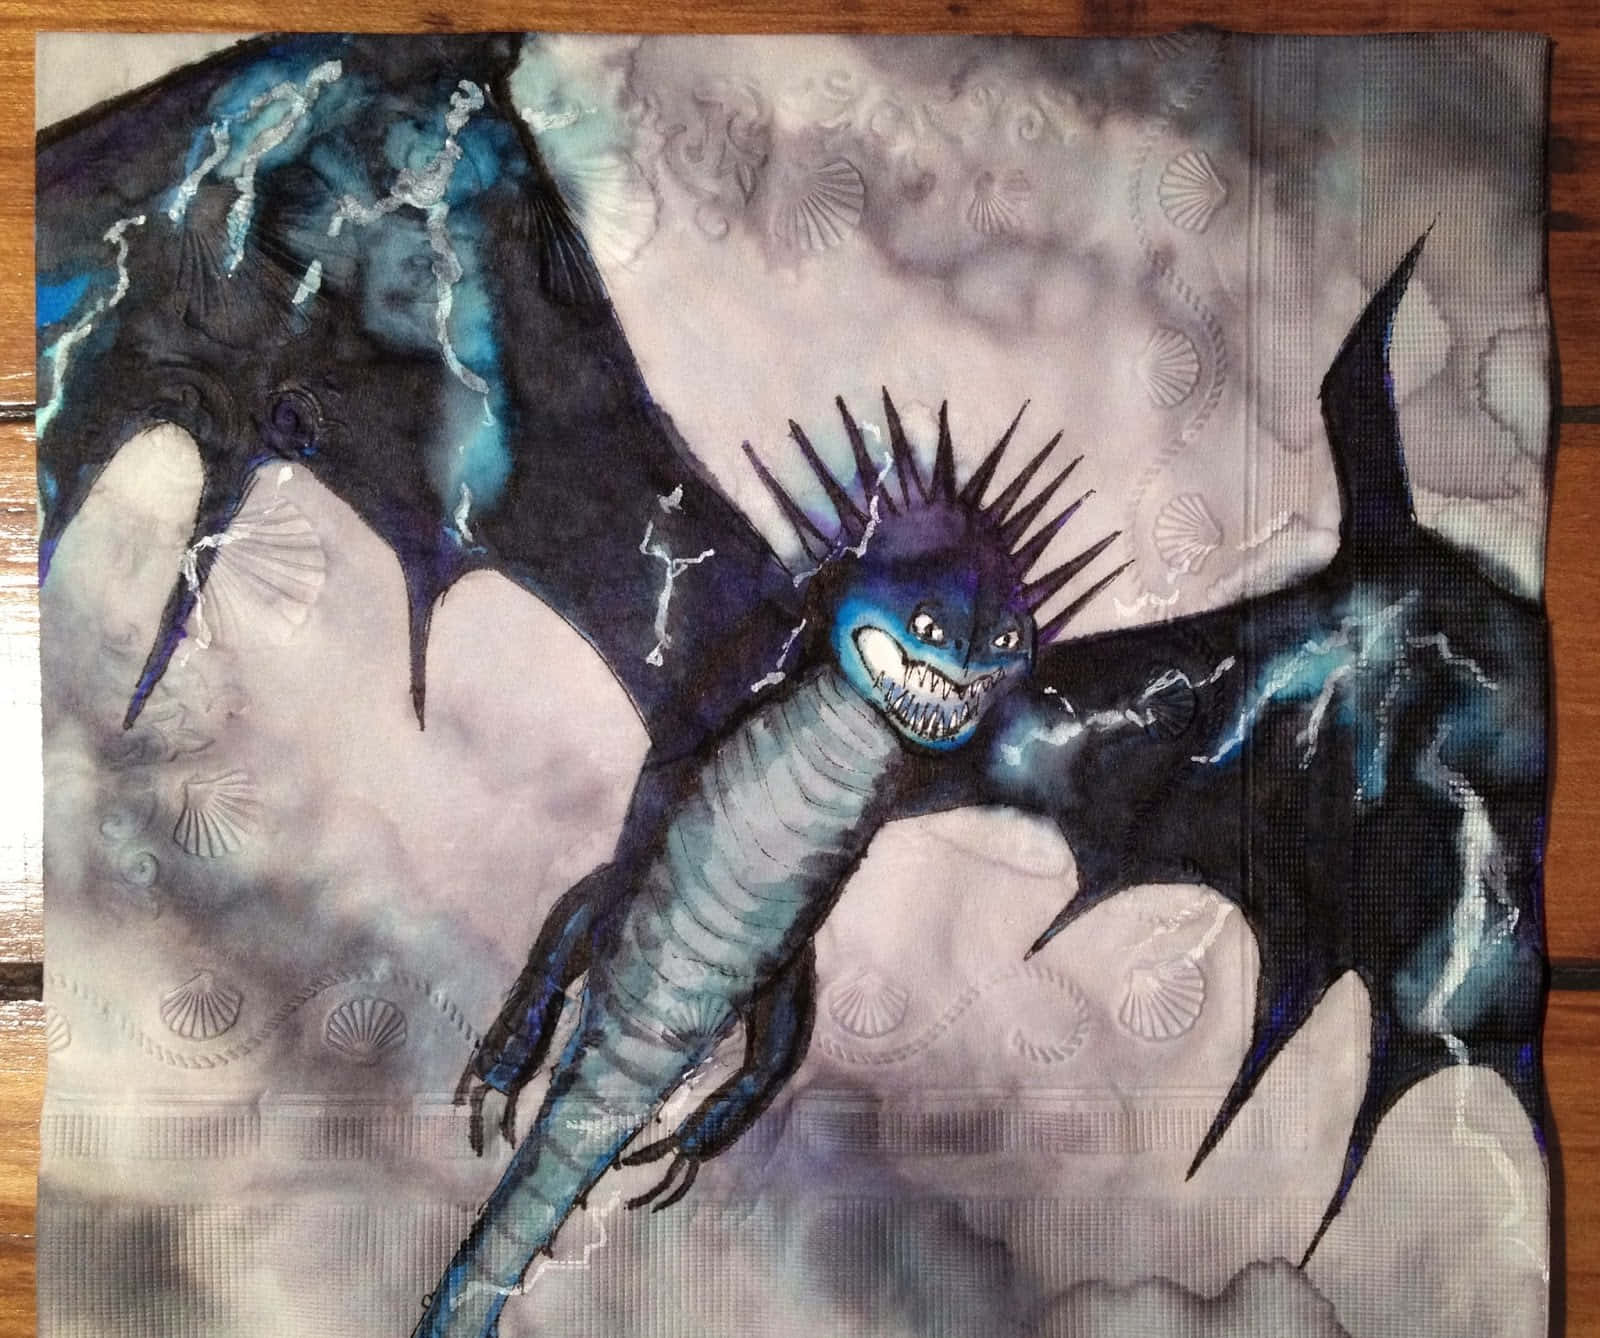 The Skrill From Dragons Riders Of Berk Wallpaper